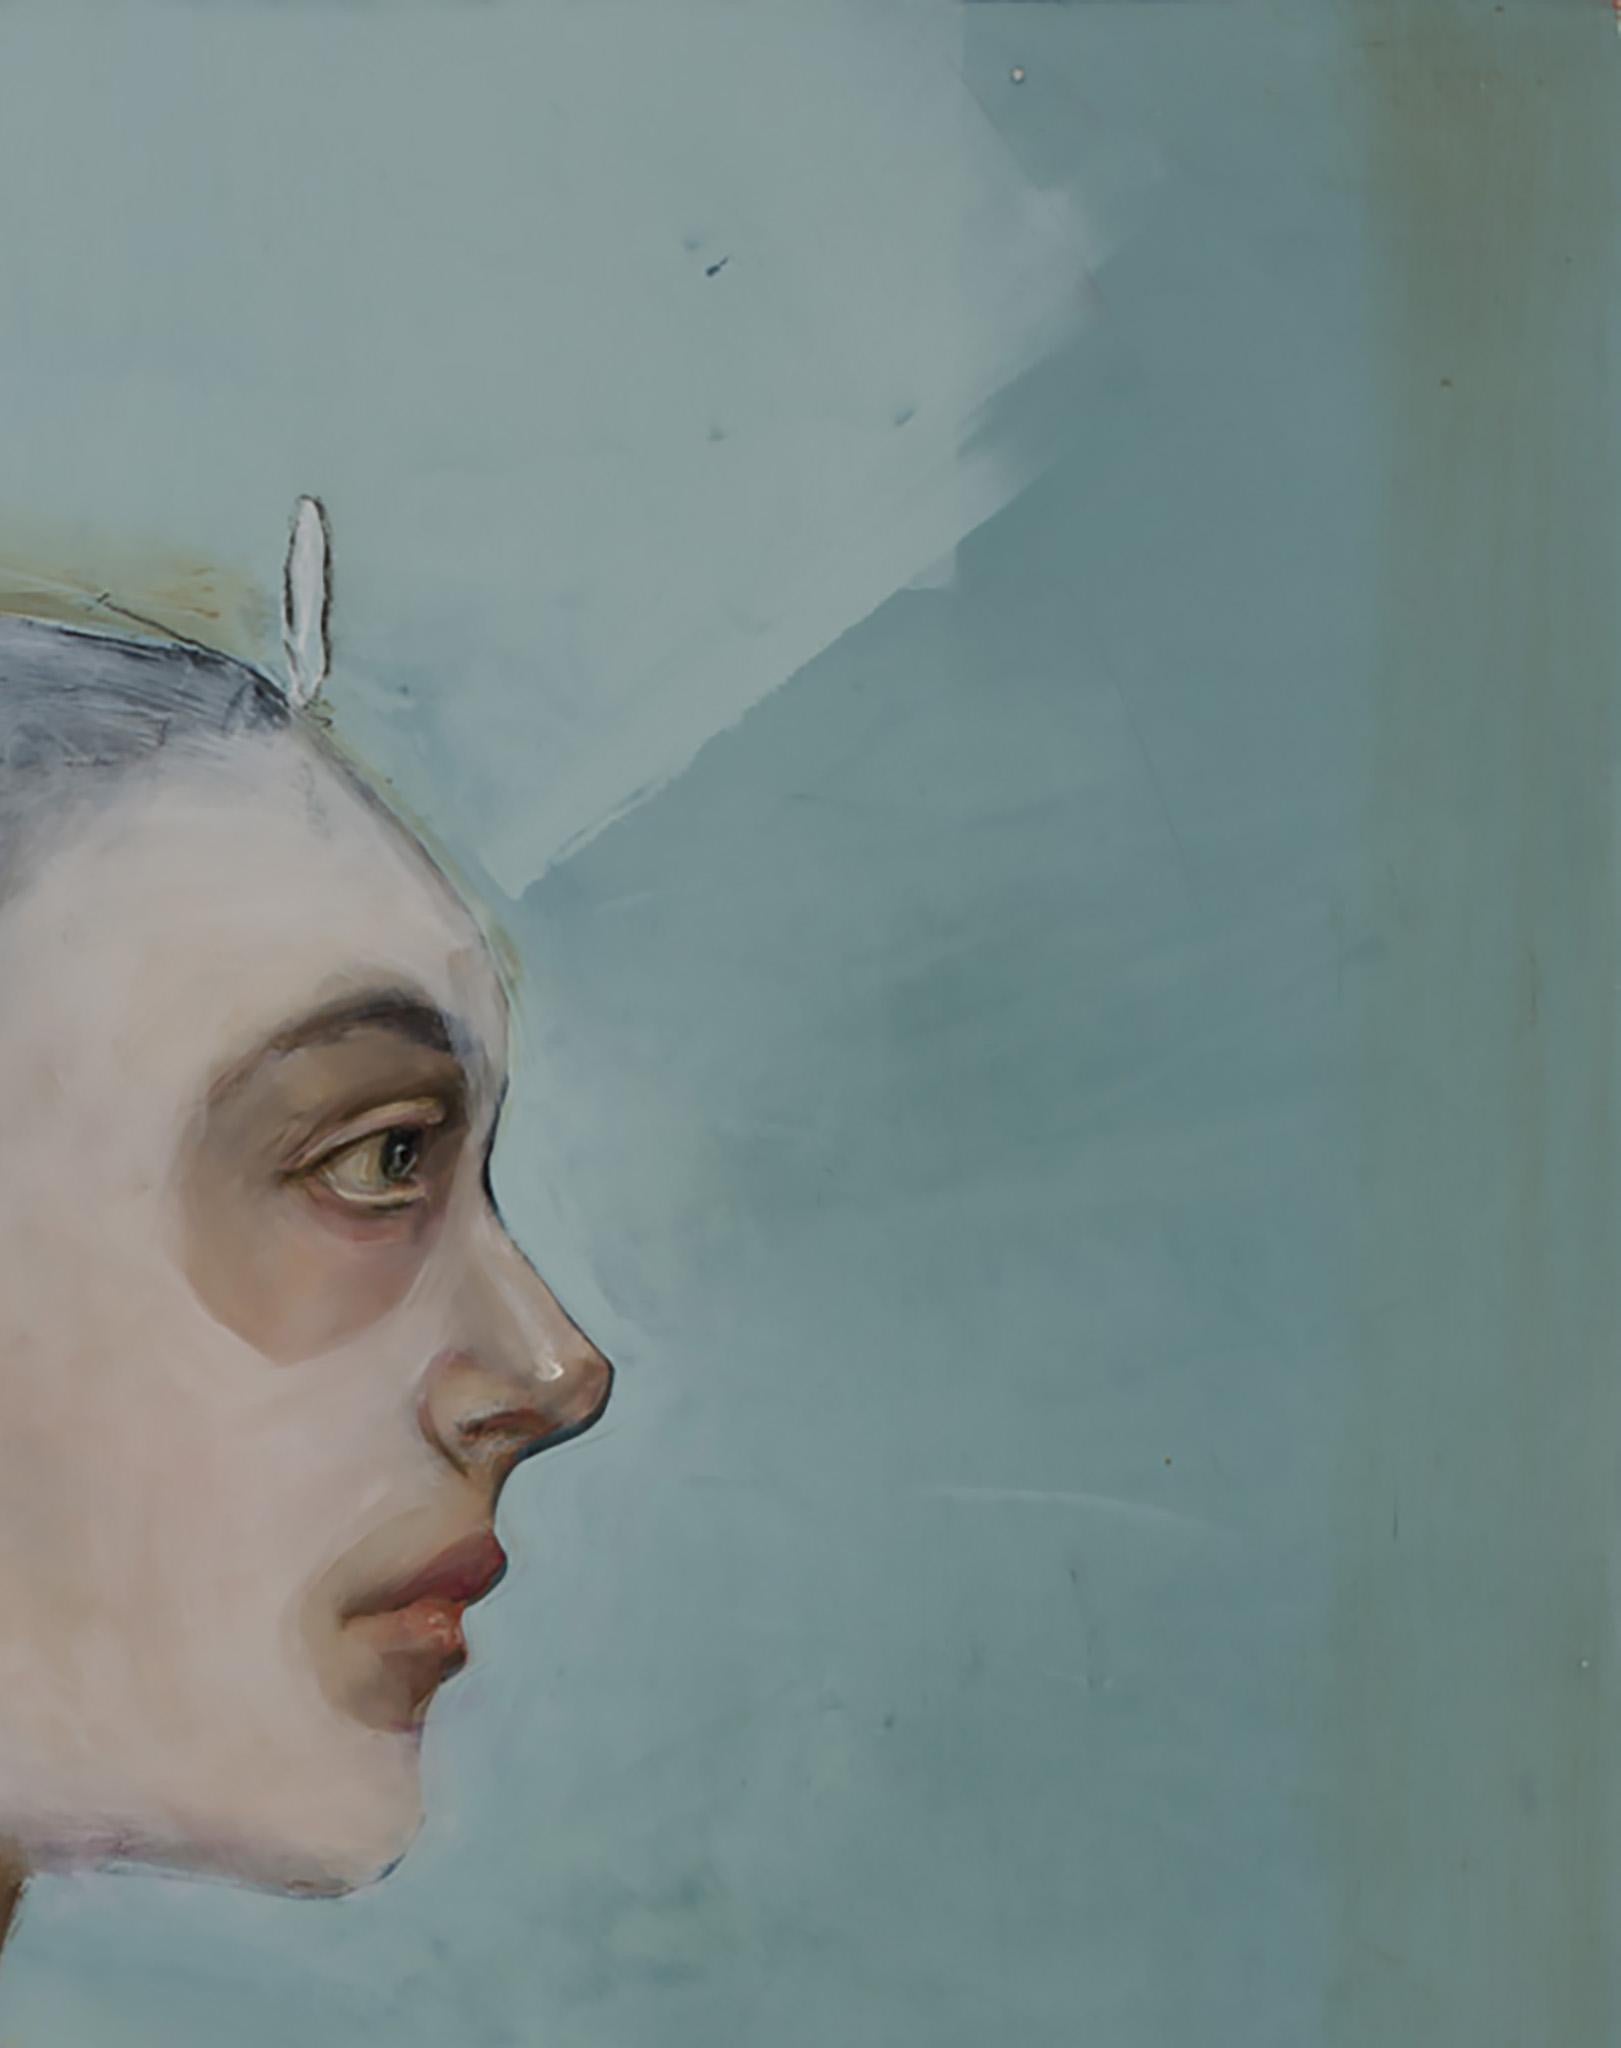 « La Mascara », huile sur toile, maître portraitiste mystérieux et fantaisiste du pop art - Painting de Michele Mikesell